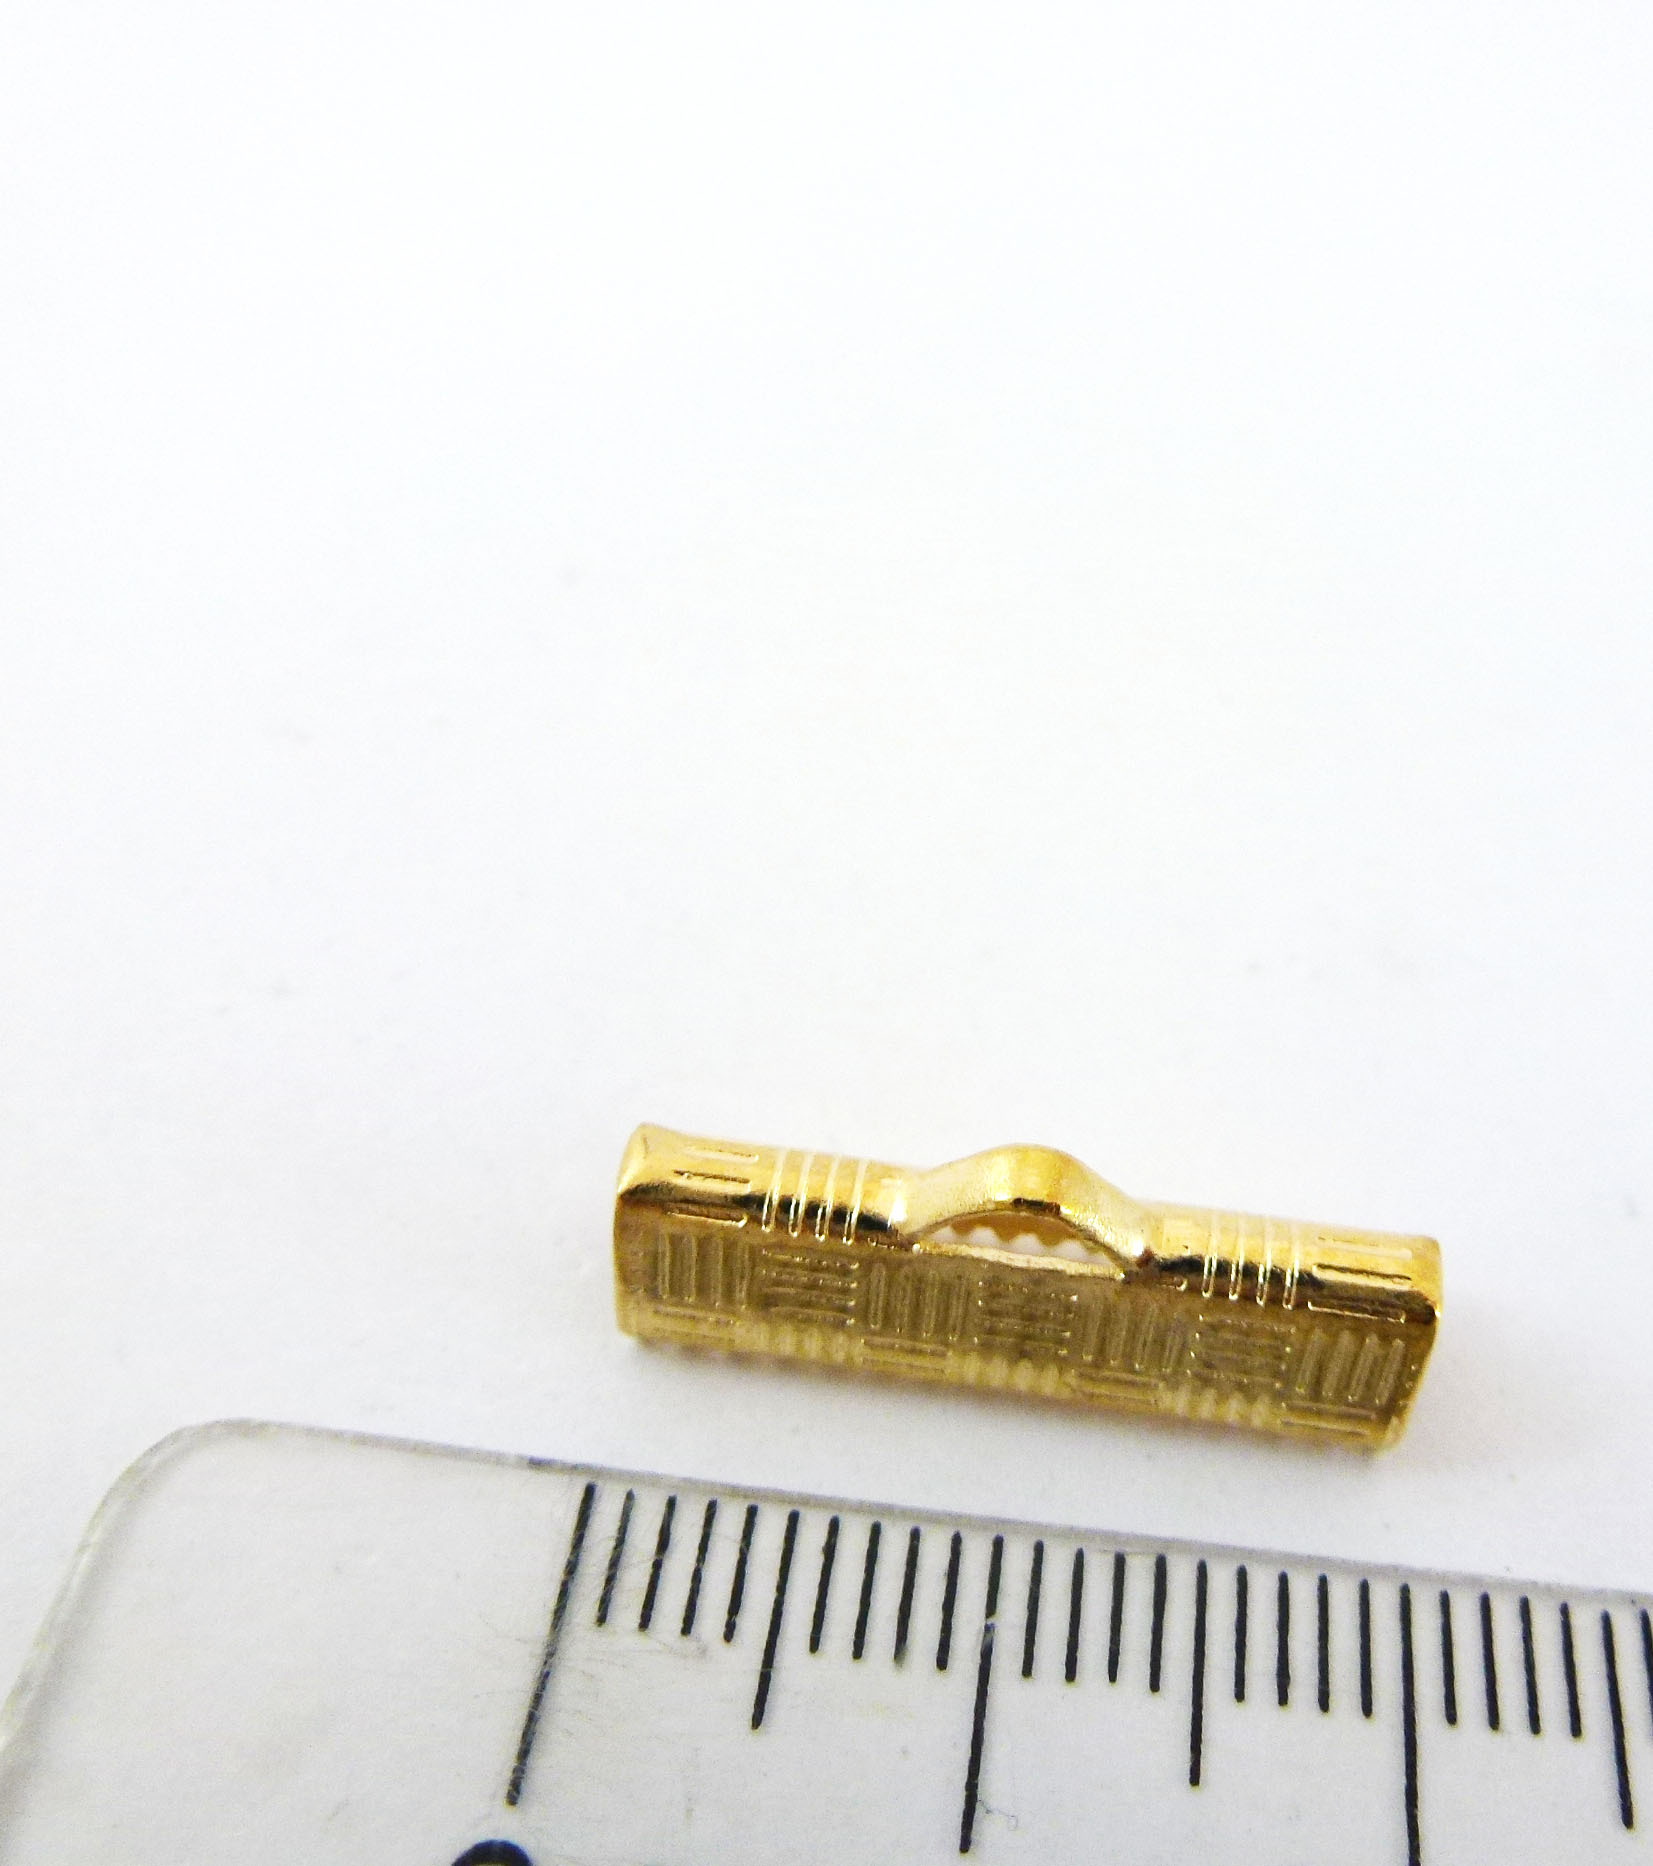 銅鍍金色條紋扁繩夾山-20mm